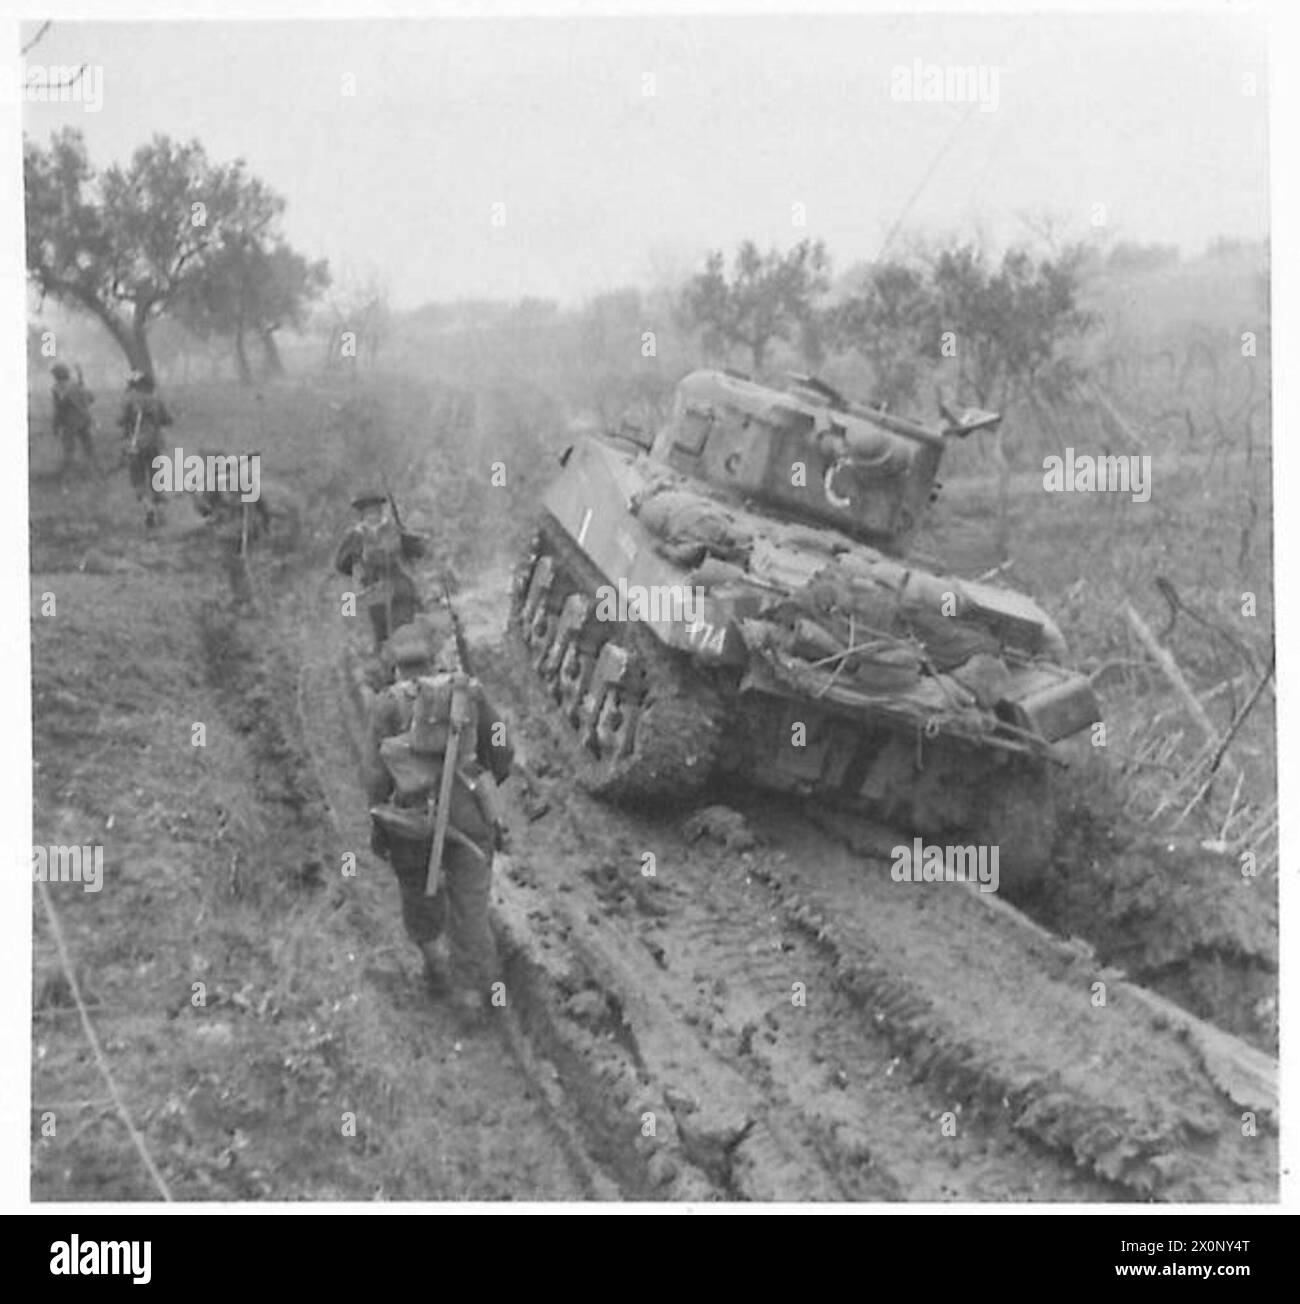 ITALIE : HUITIÈME POUSSÉE des ARMYCANADIANS VERS LA RIVIÈRE ARIE - les chars du 12 Canadian Tank Regiment et l'infanterie des Cape Breton Highlanders avancent sur un sol très mou. Négatif photographique, Armée britannique Banque D'Images